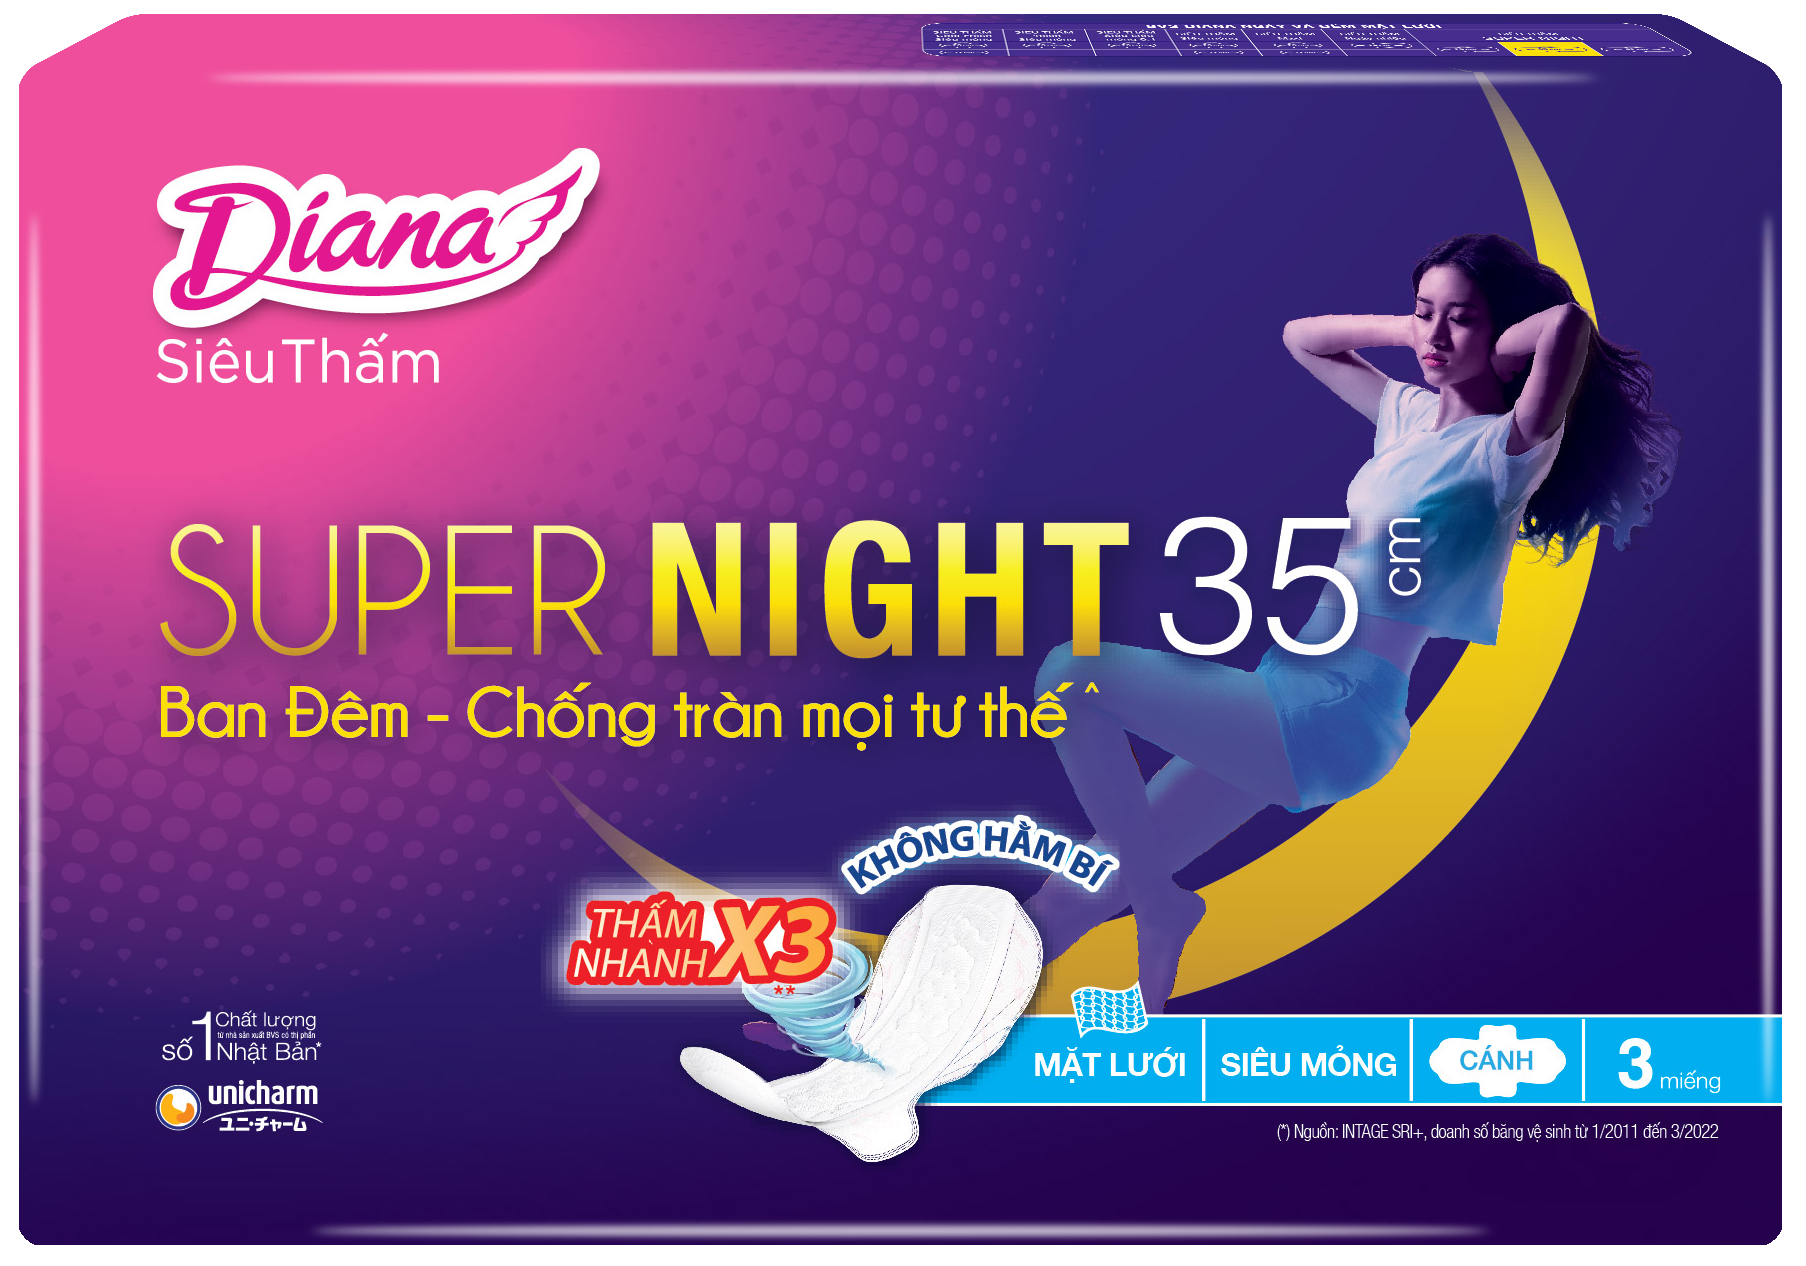 Combo 6 Băng Vệ Sinh Diana Super Night 35cm (Gói 3 Miếng)